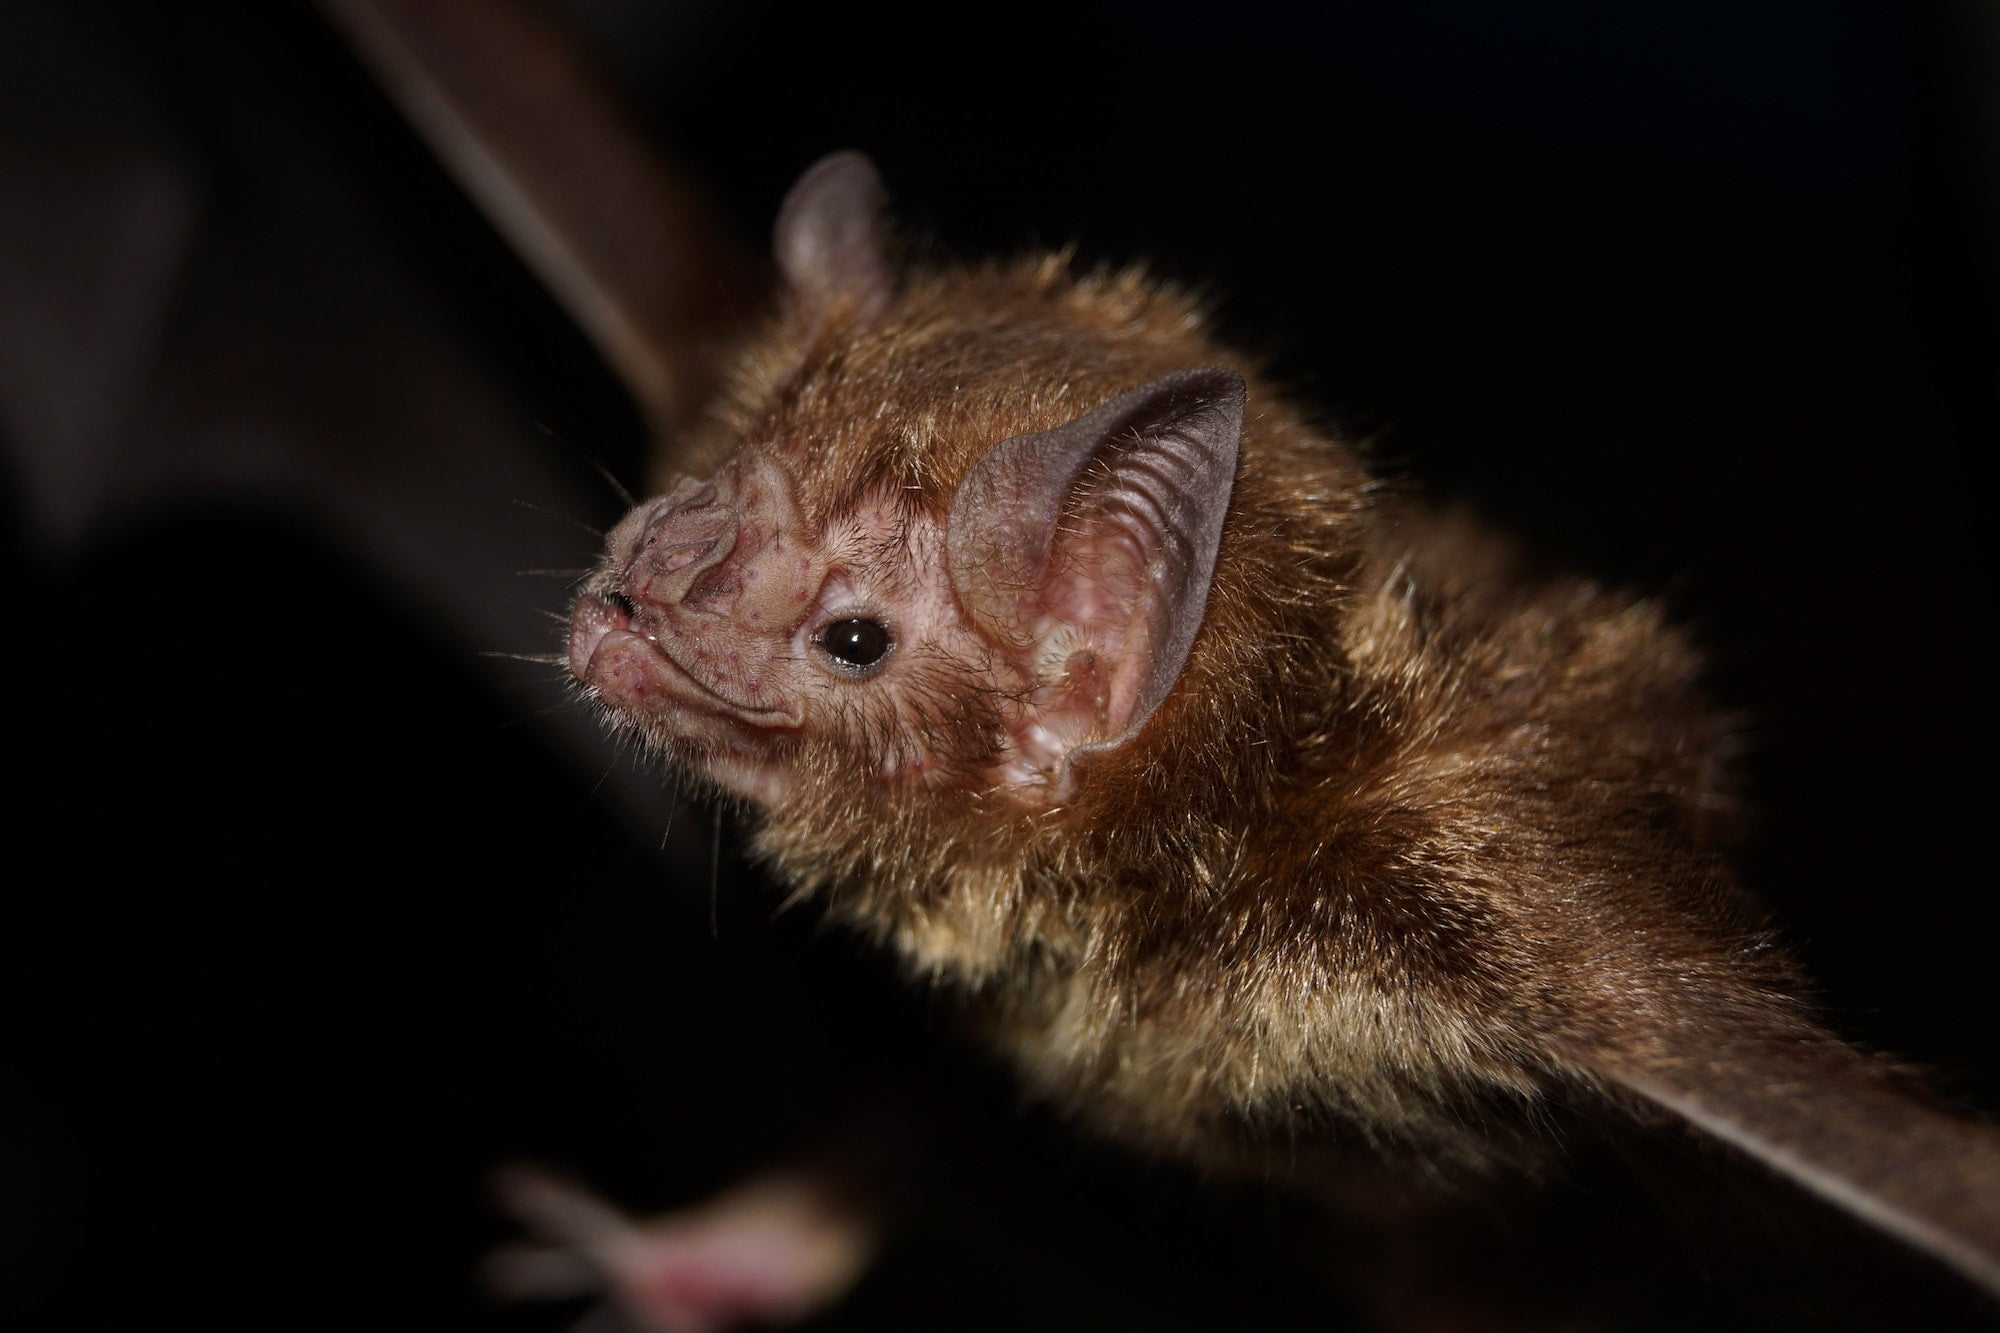 Closeup of a spooky common vampire bat